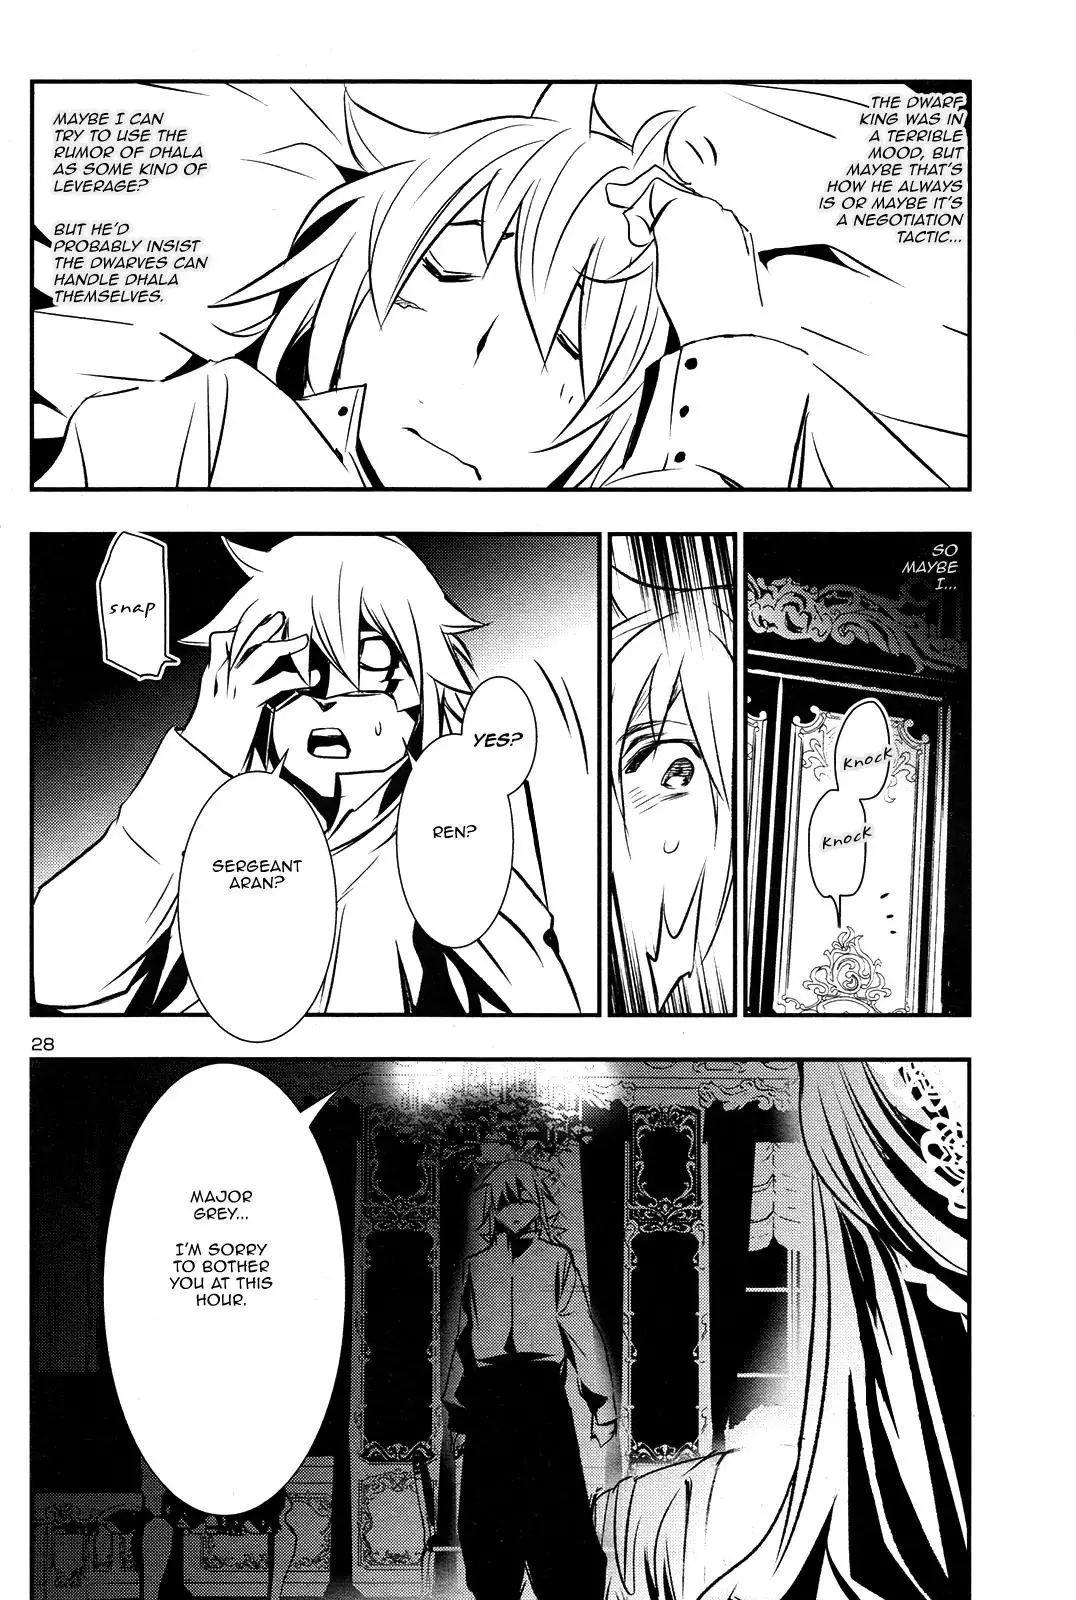 Shinju no Nectar - 9 page 26